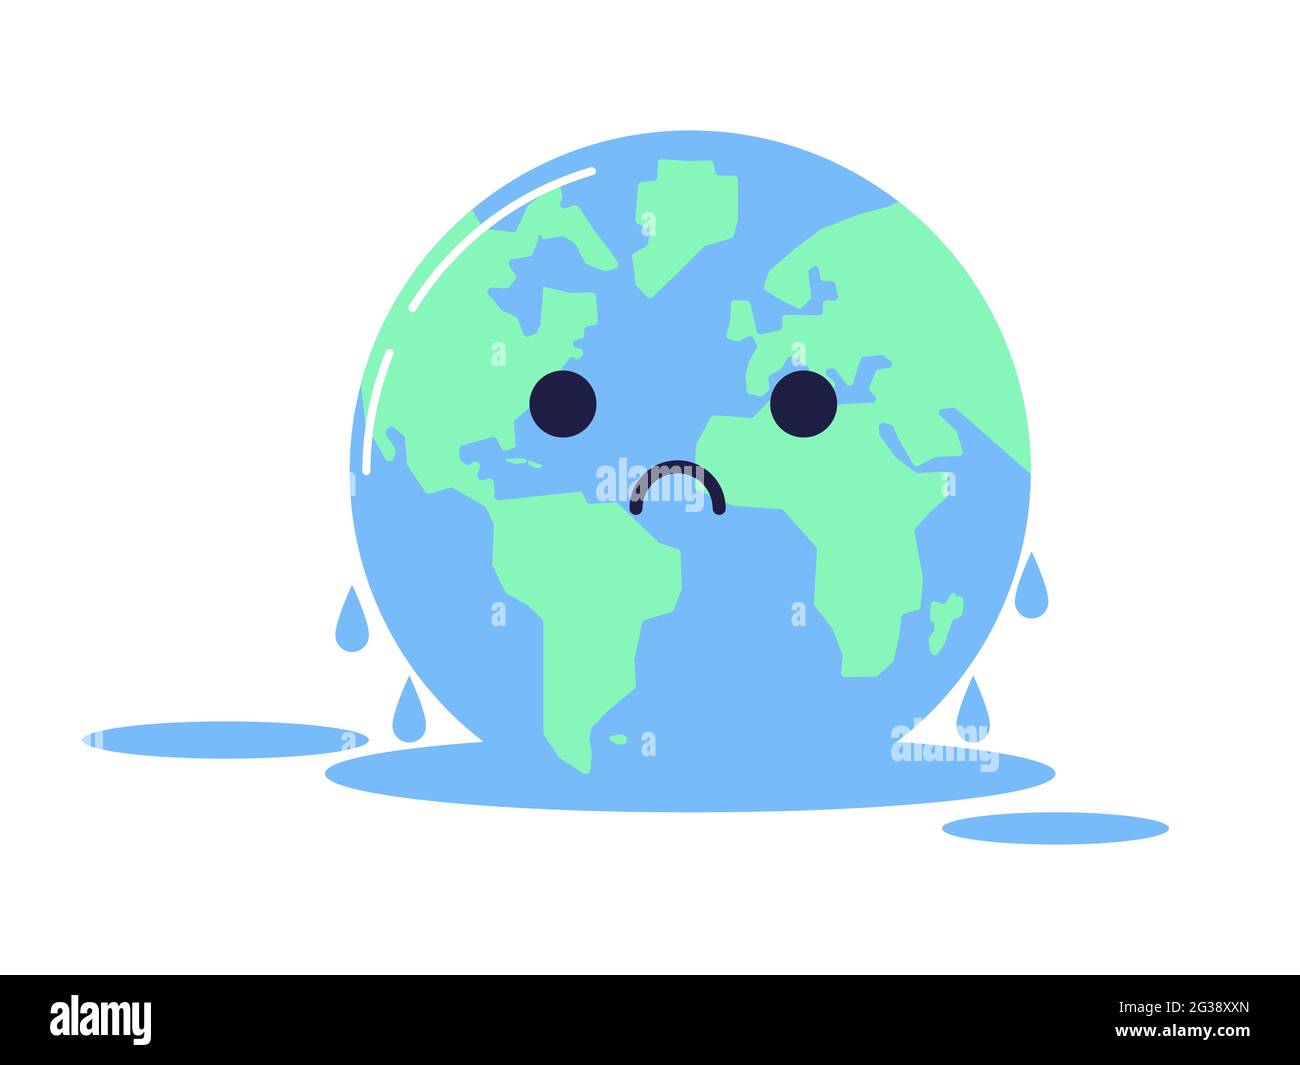 Clip art per alte temperature, riscaldamento globale e cambiamento climatico. Triste personaggio della Terra, illustrazione isolata su sfondo bianco. Illustrazione Vettoriale